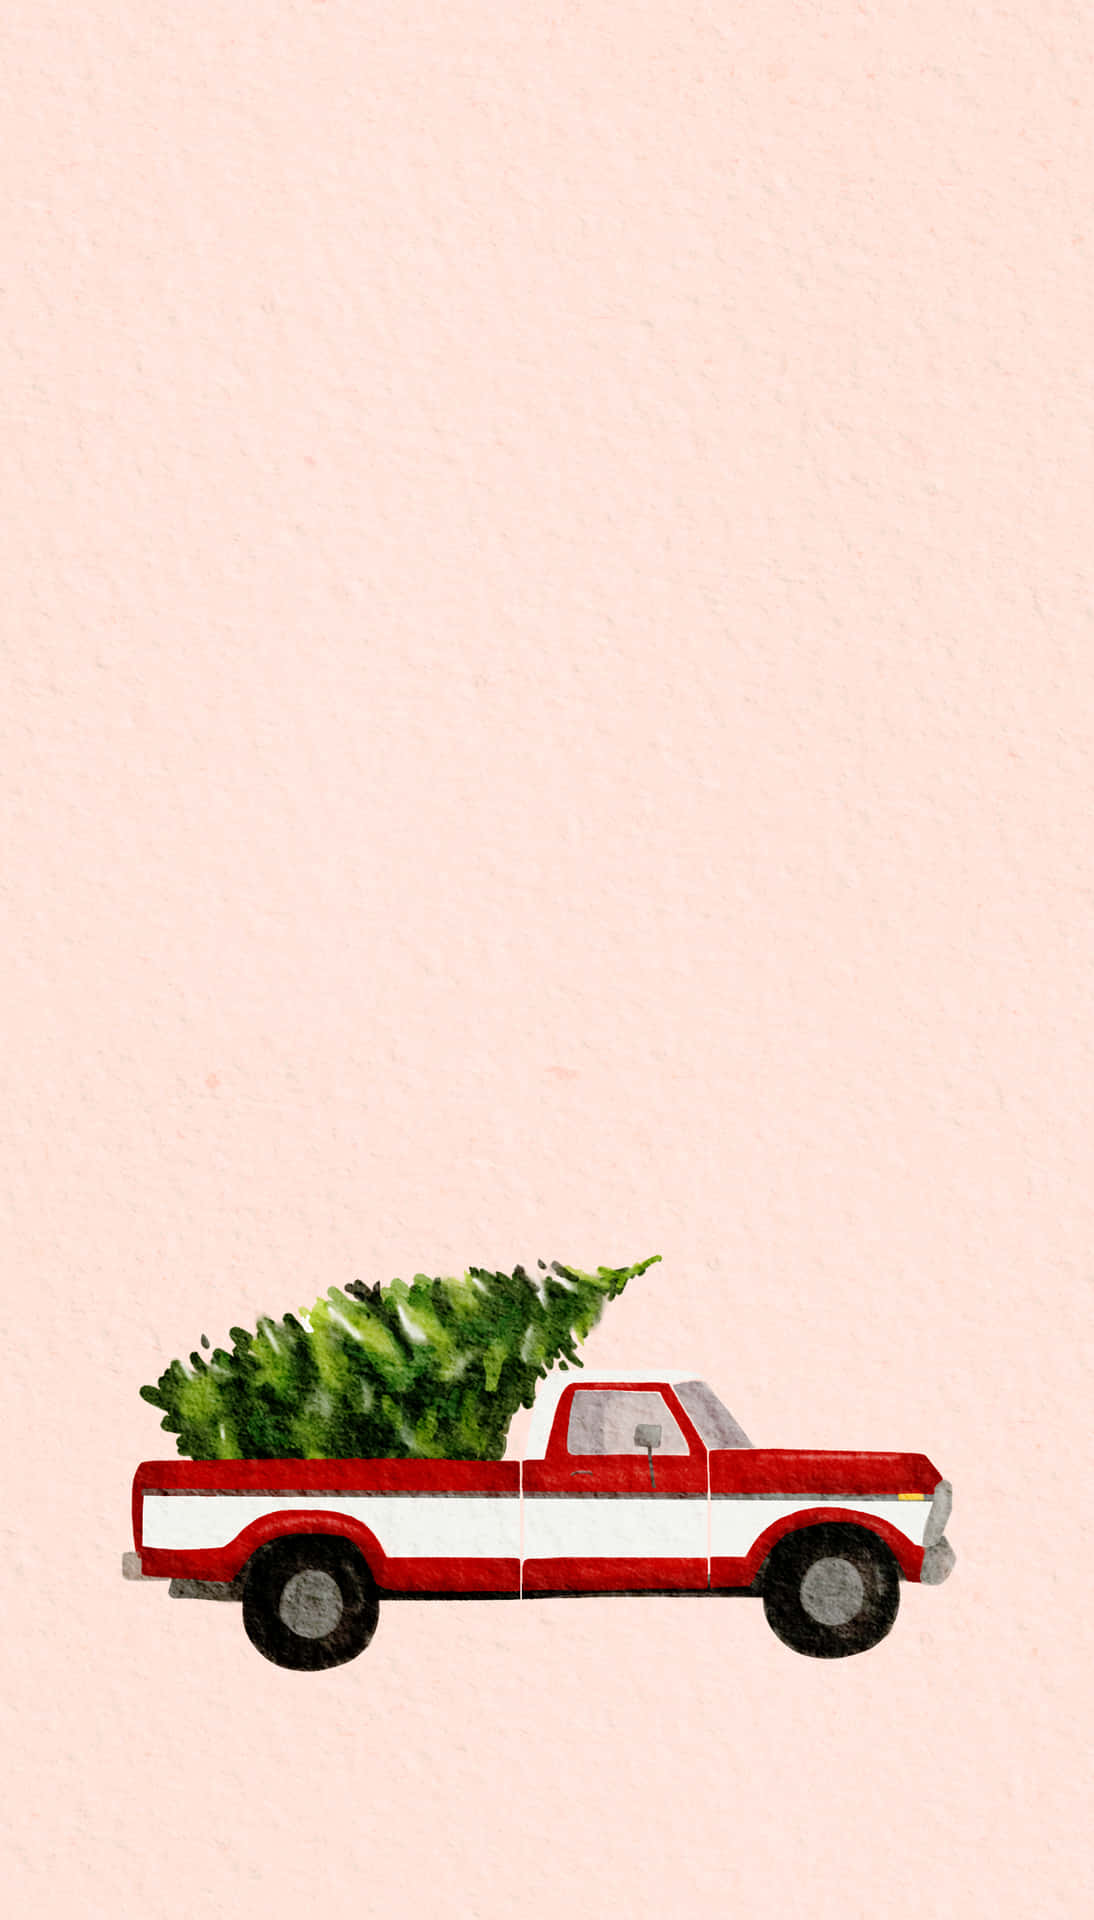 Einweihnachten Im Altmodischen Stil Mit Einem Vintage-truck. Wallpaper